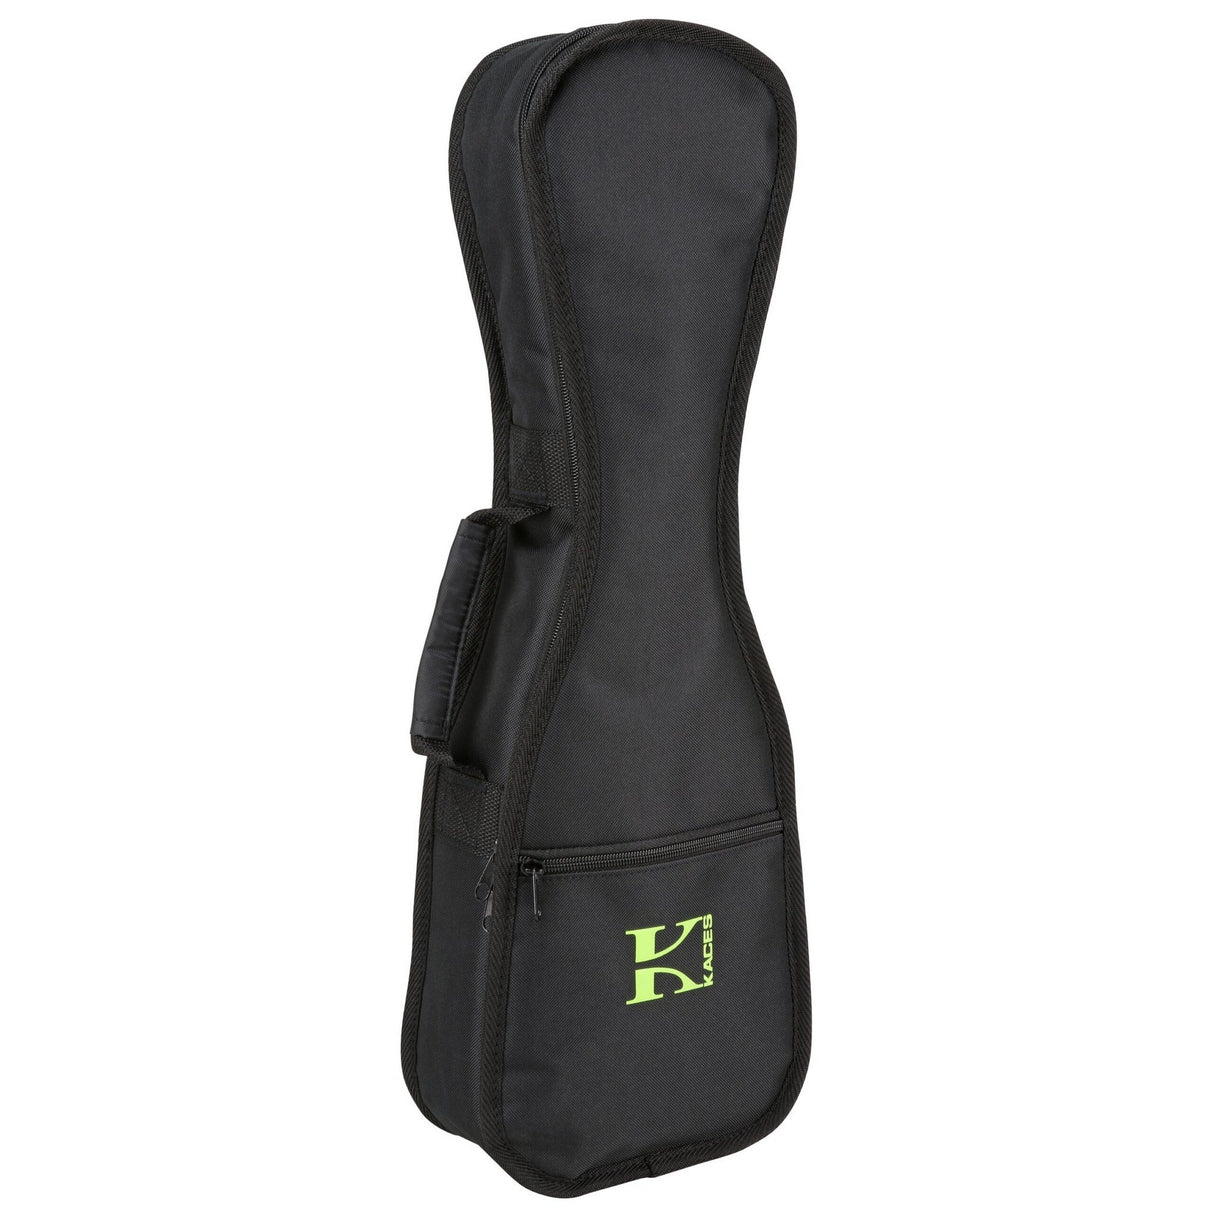 Kaces KEUS3 Xpress Soprano Size Ukulele Bag